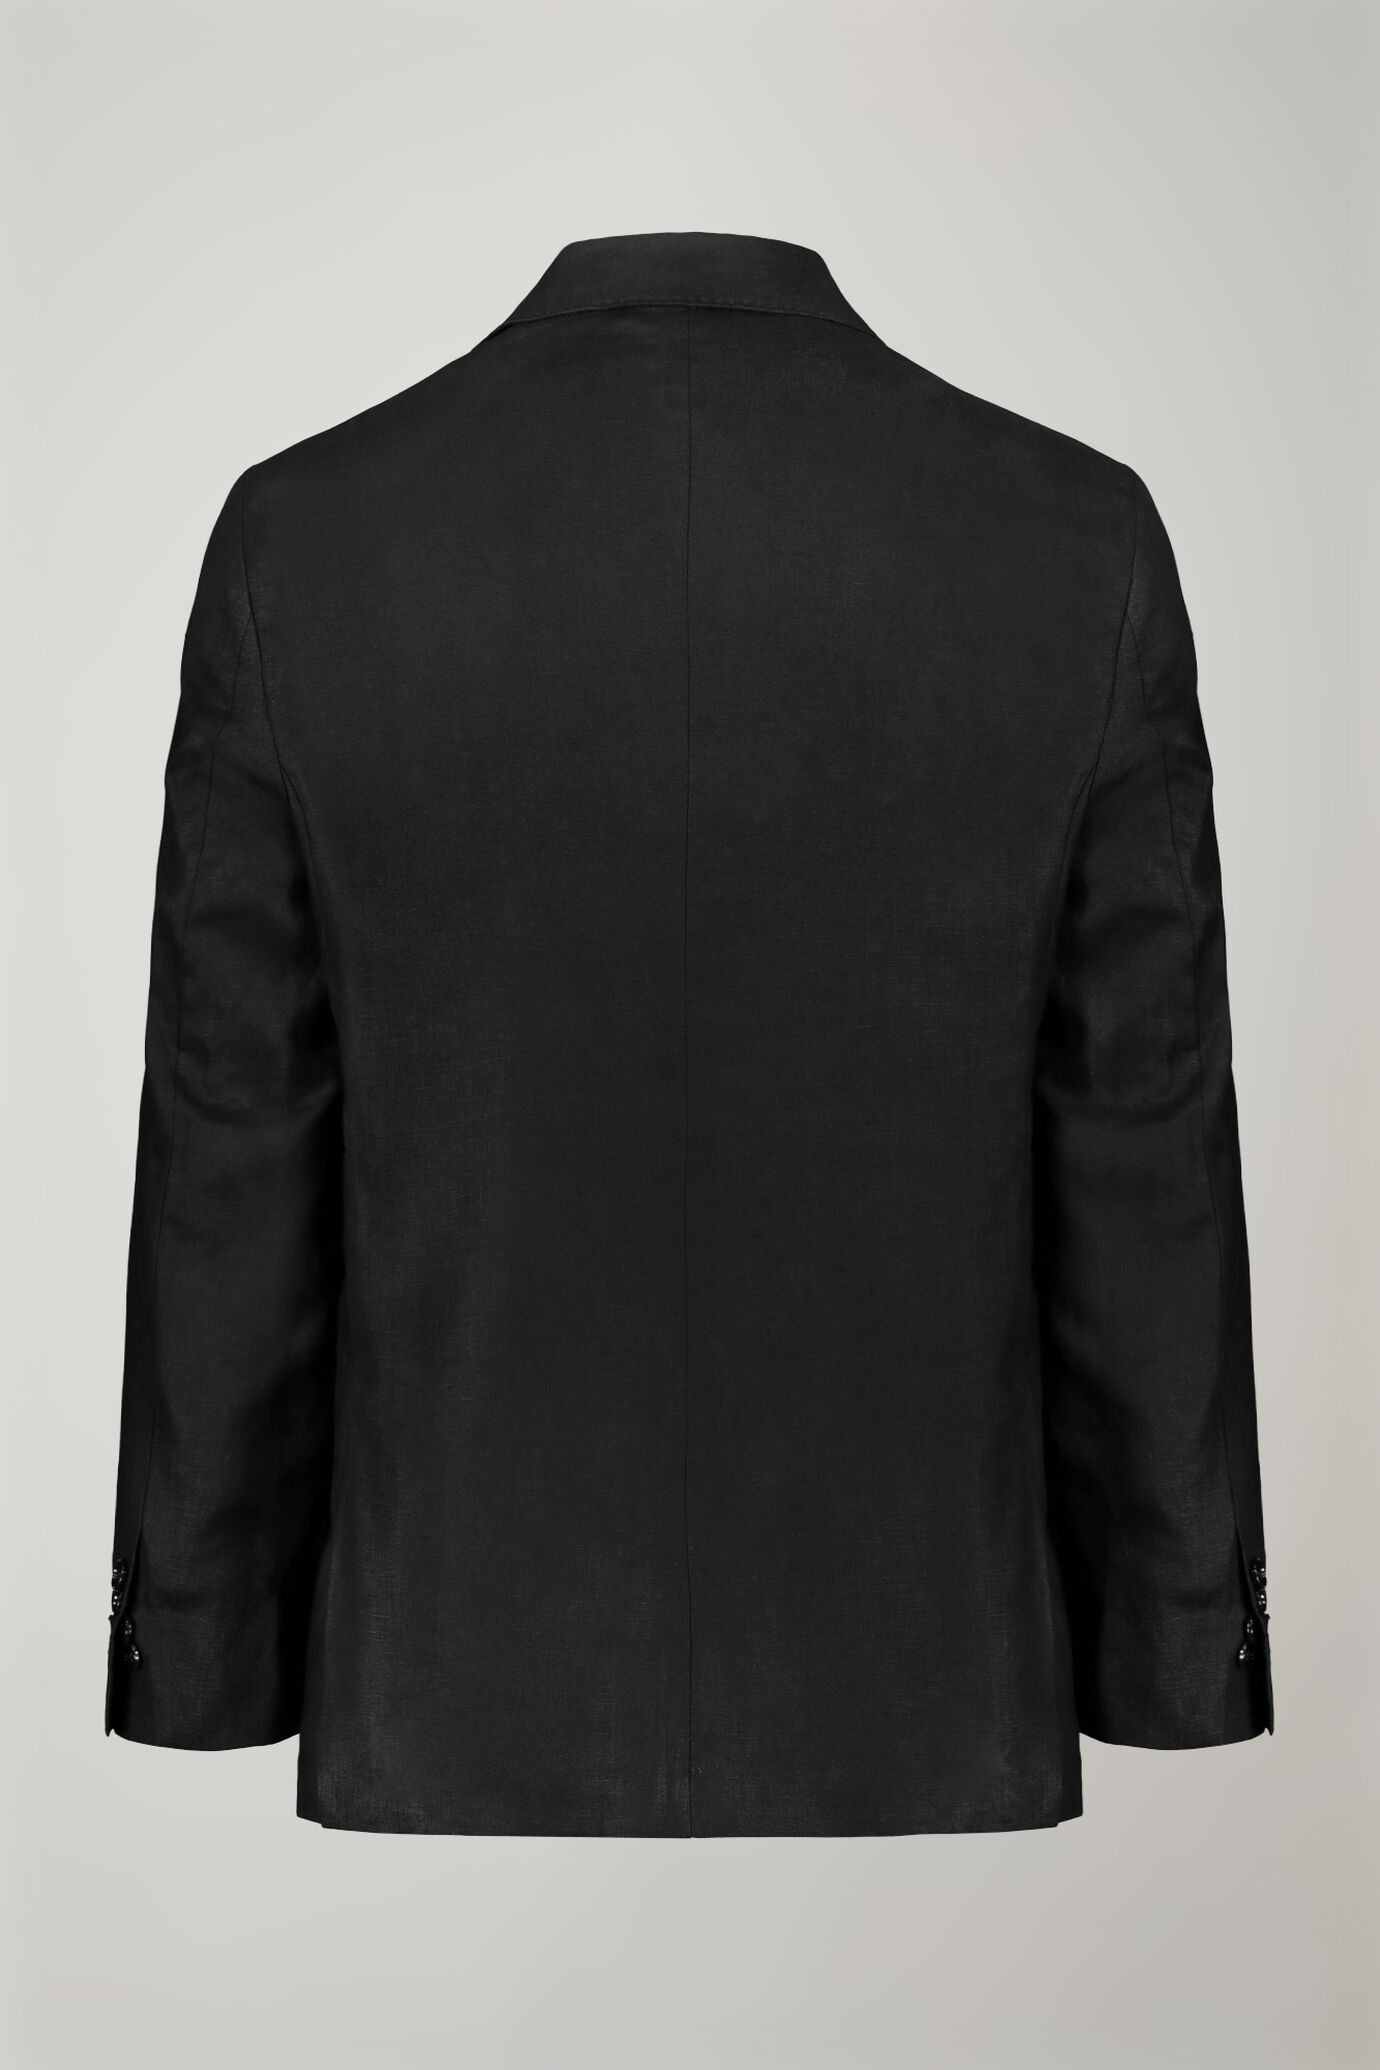 Men's single-breasted 100% linen regular fit suit image number 5